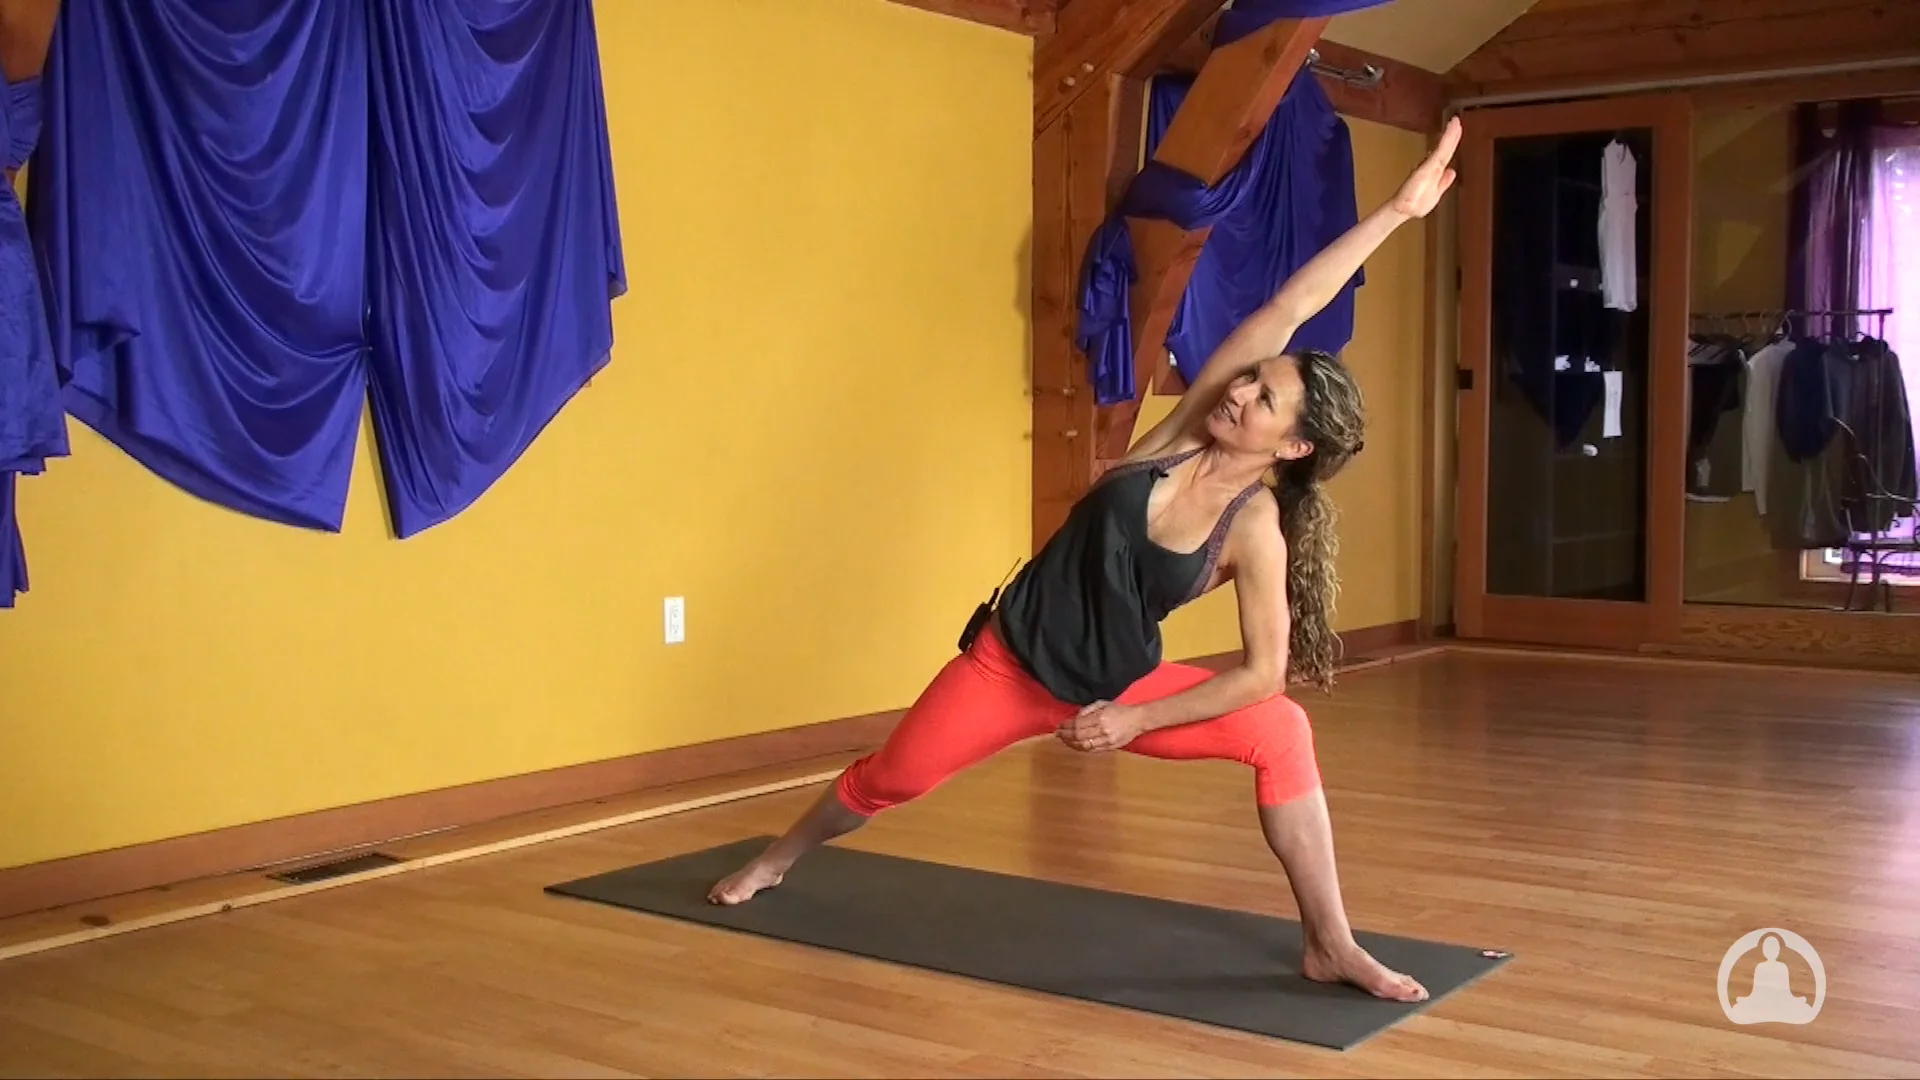 Yoga Reel.mp4 on Vimeo